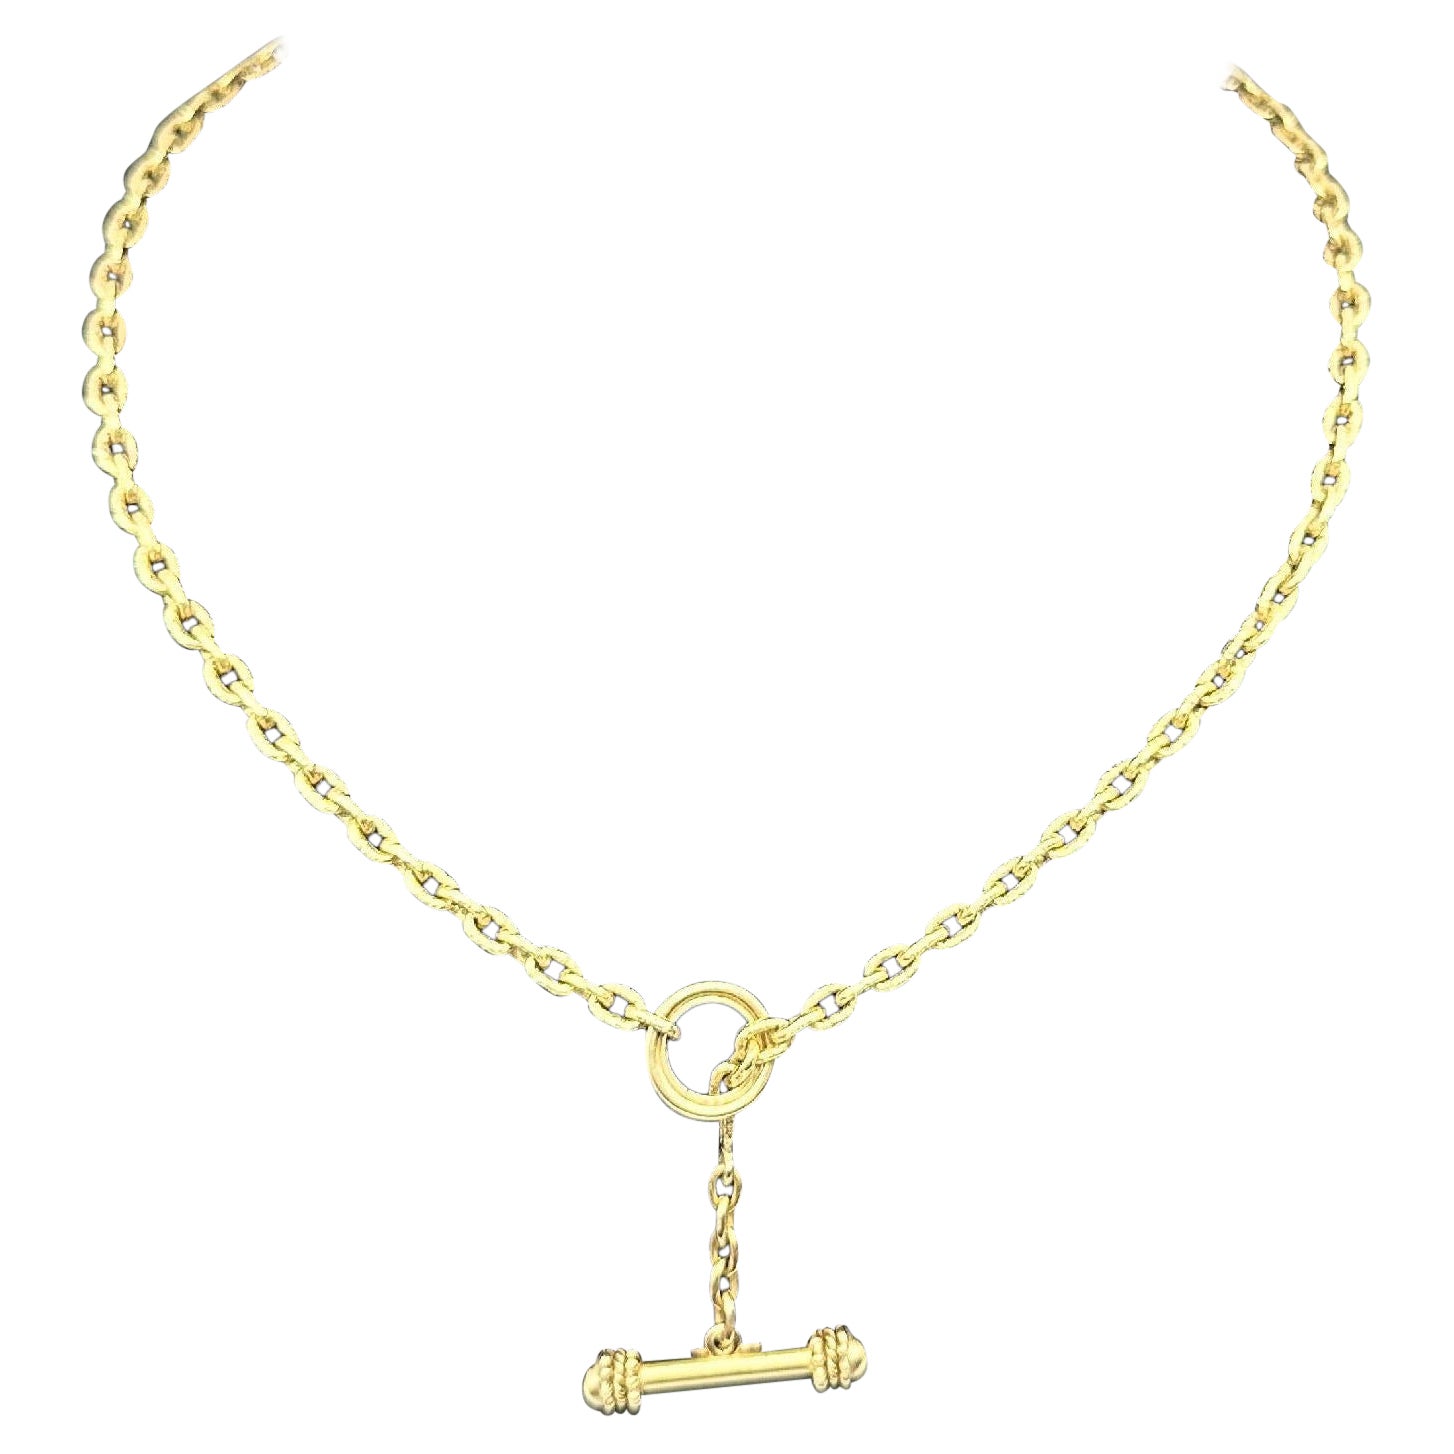 Elizabeth Locke Orvieta Hammered Gold Oval Link Necklace 19k Yg